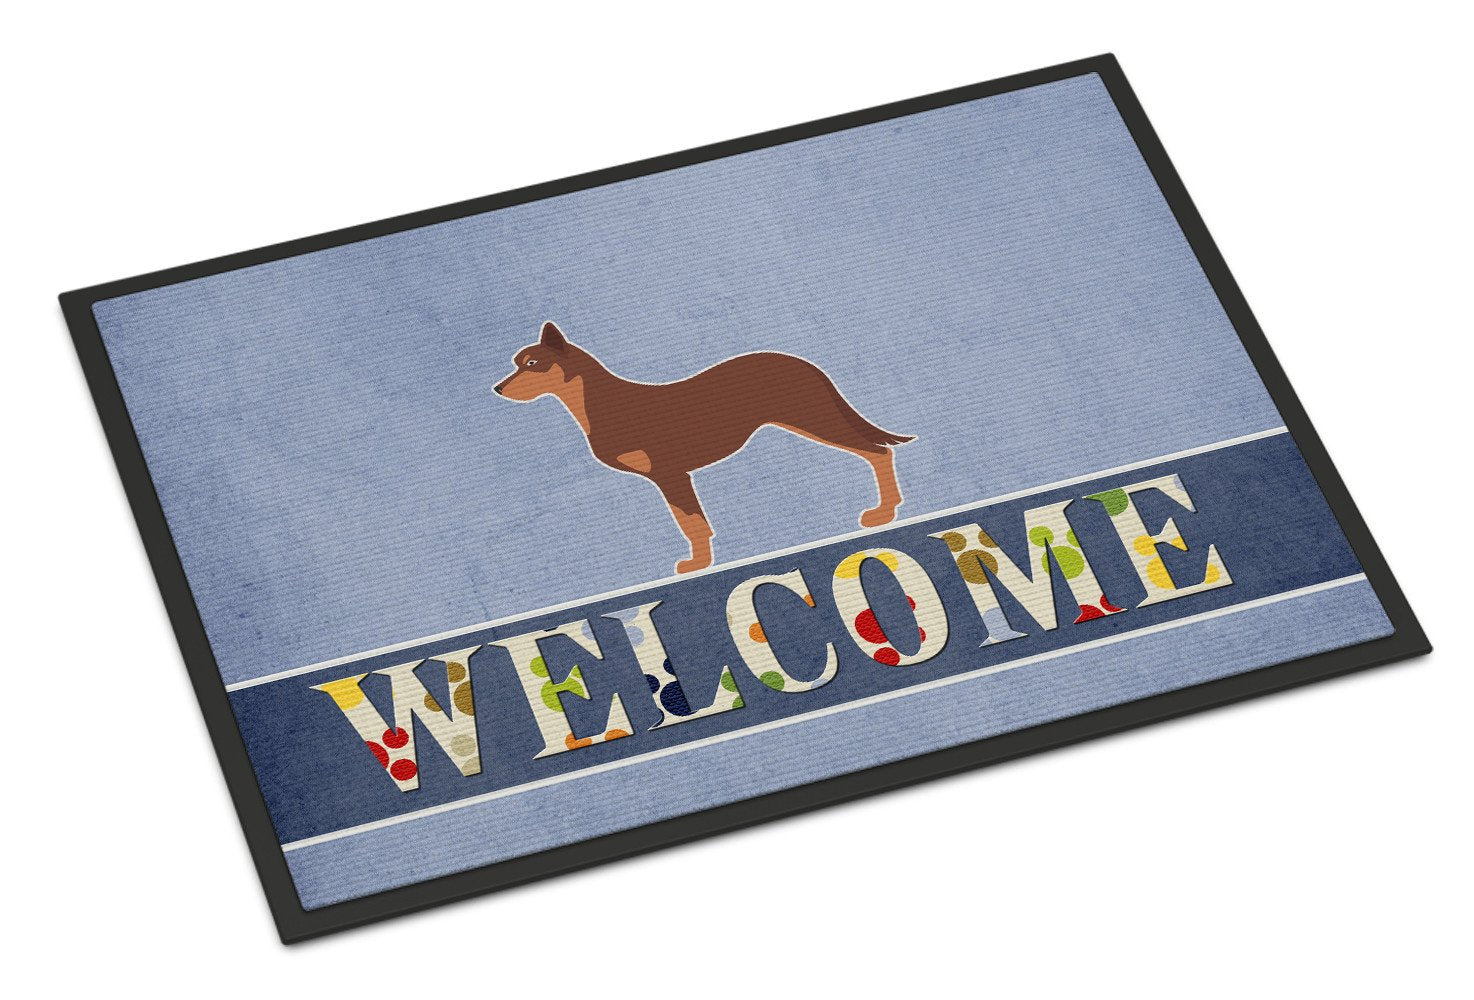 Australian Kelpie Dog Welcome Indoor or Outdoor Mat 24x36 BB5533JMAT by Caroline's Treasures